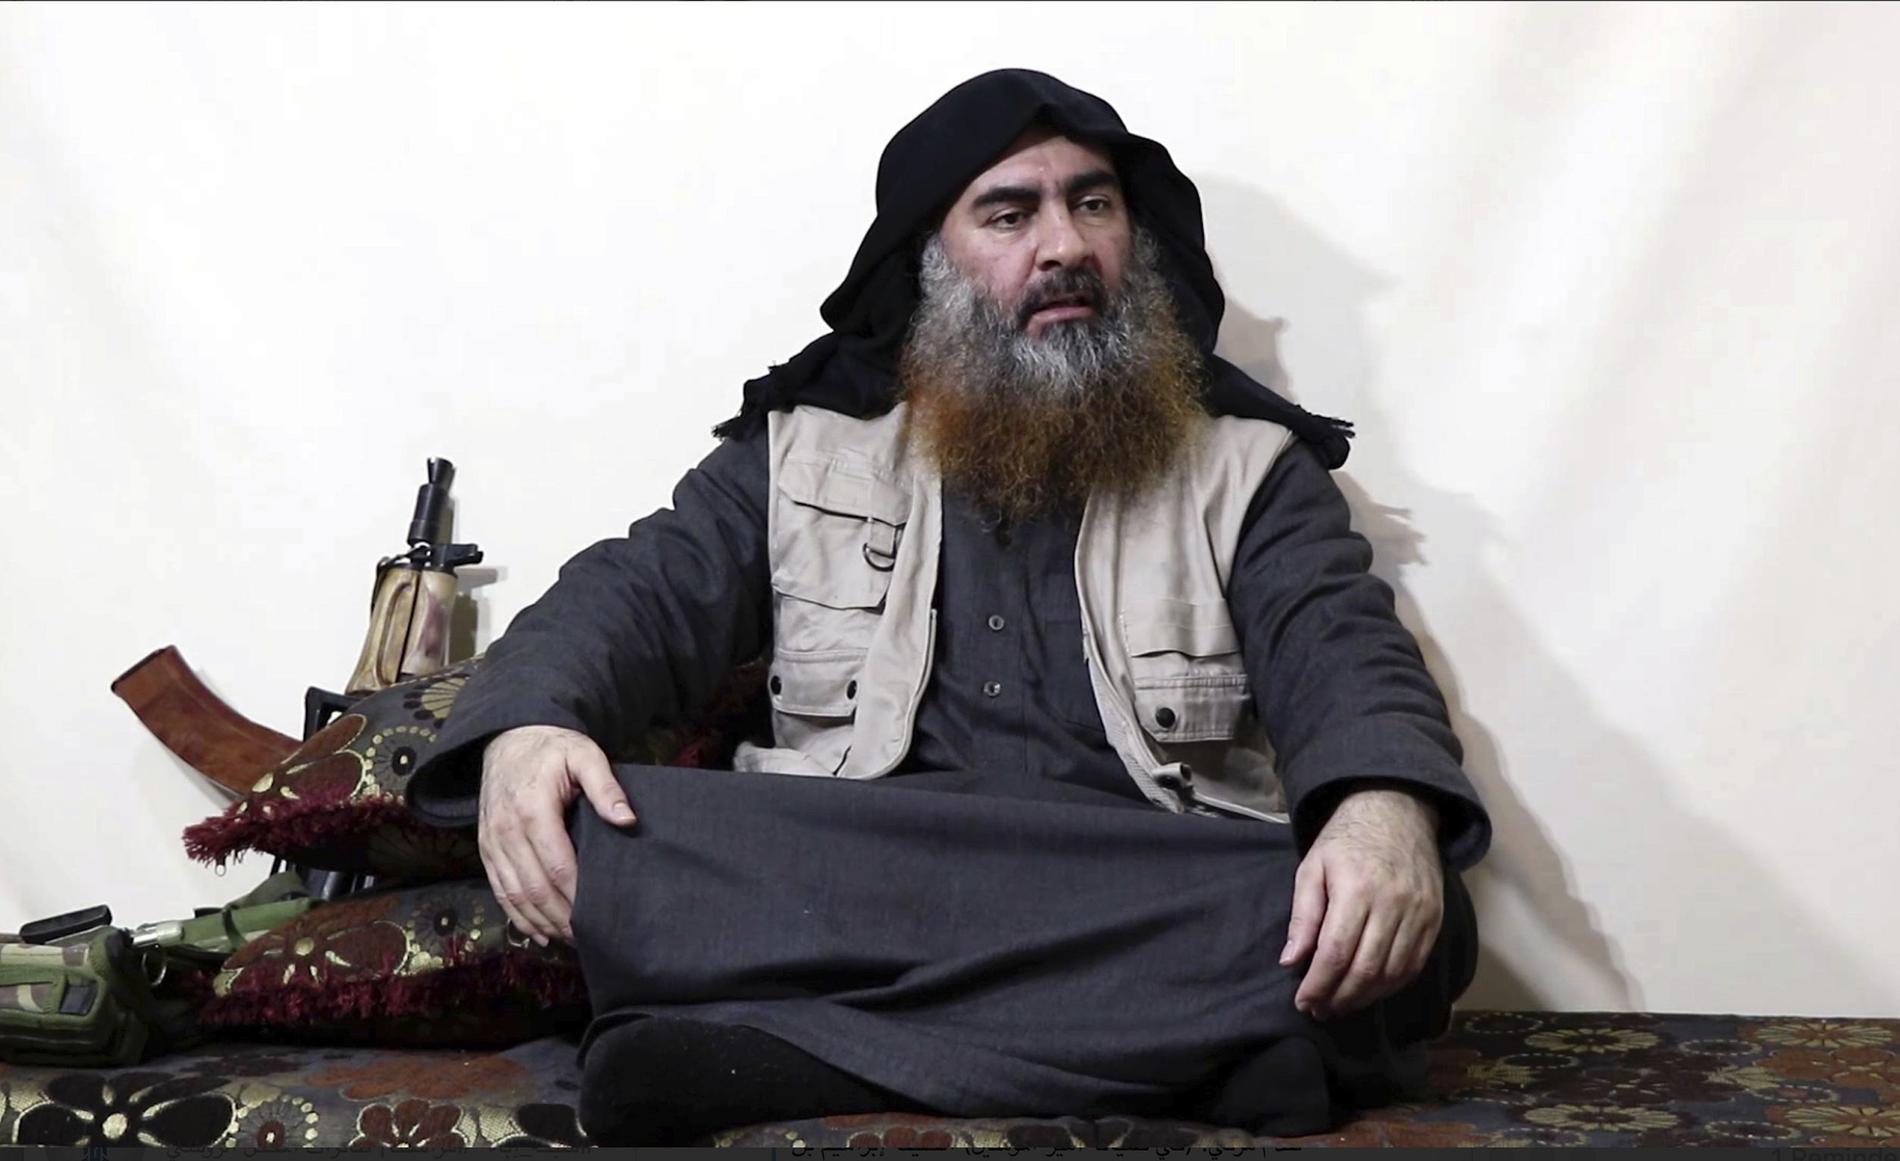 IS ledaren Abu Bakr al-Baghdadi uppges ha dödats i en räd av USA. Bilden den sista kända på IS-ledaren.